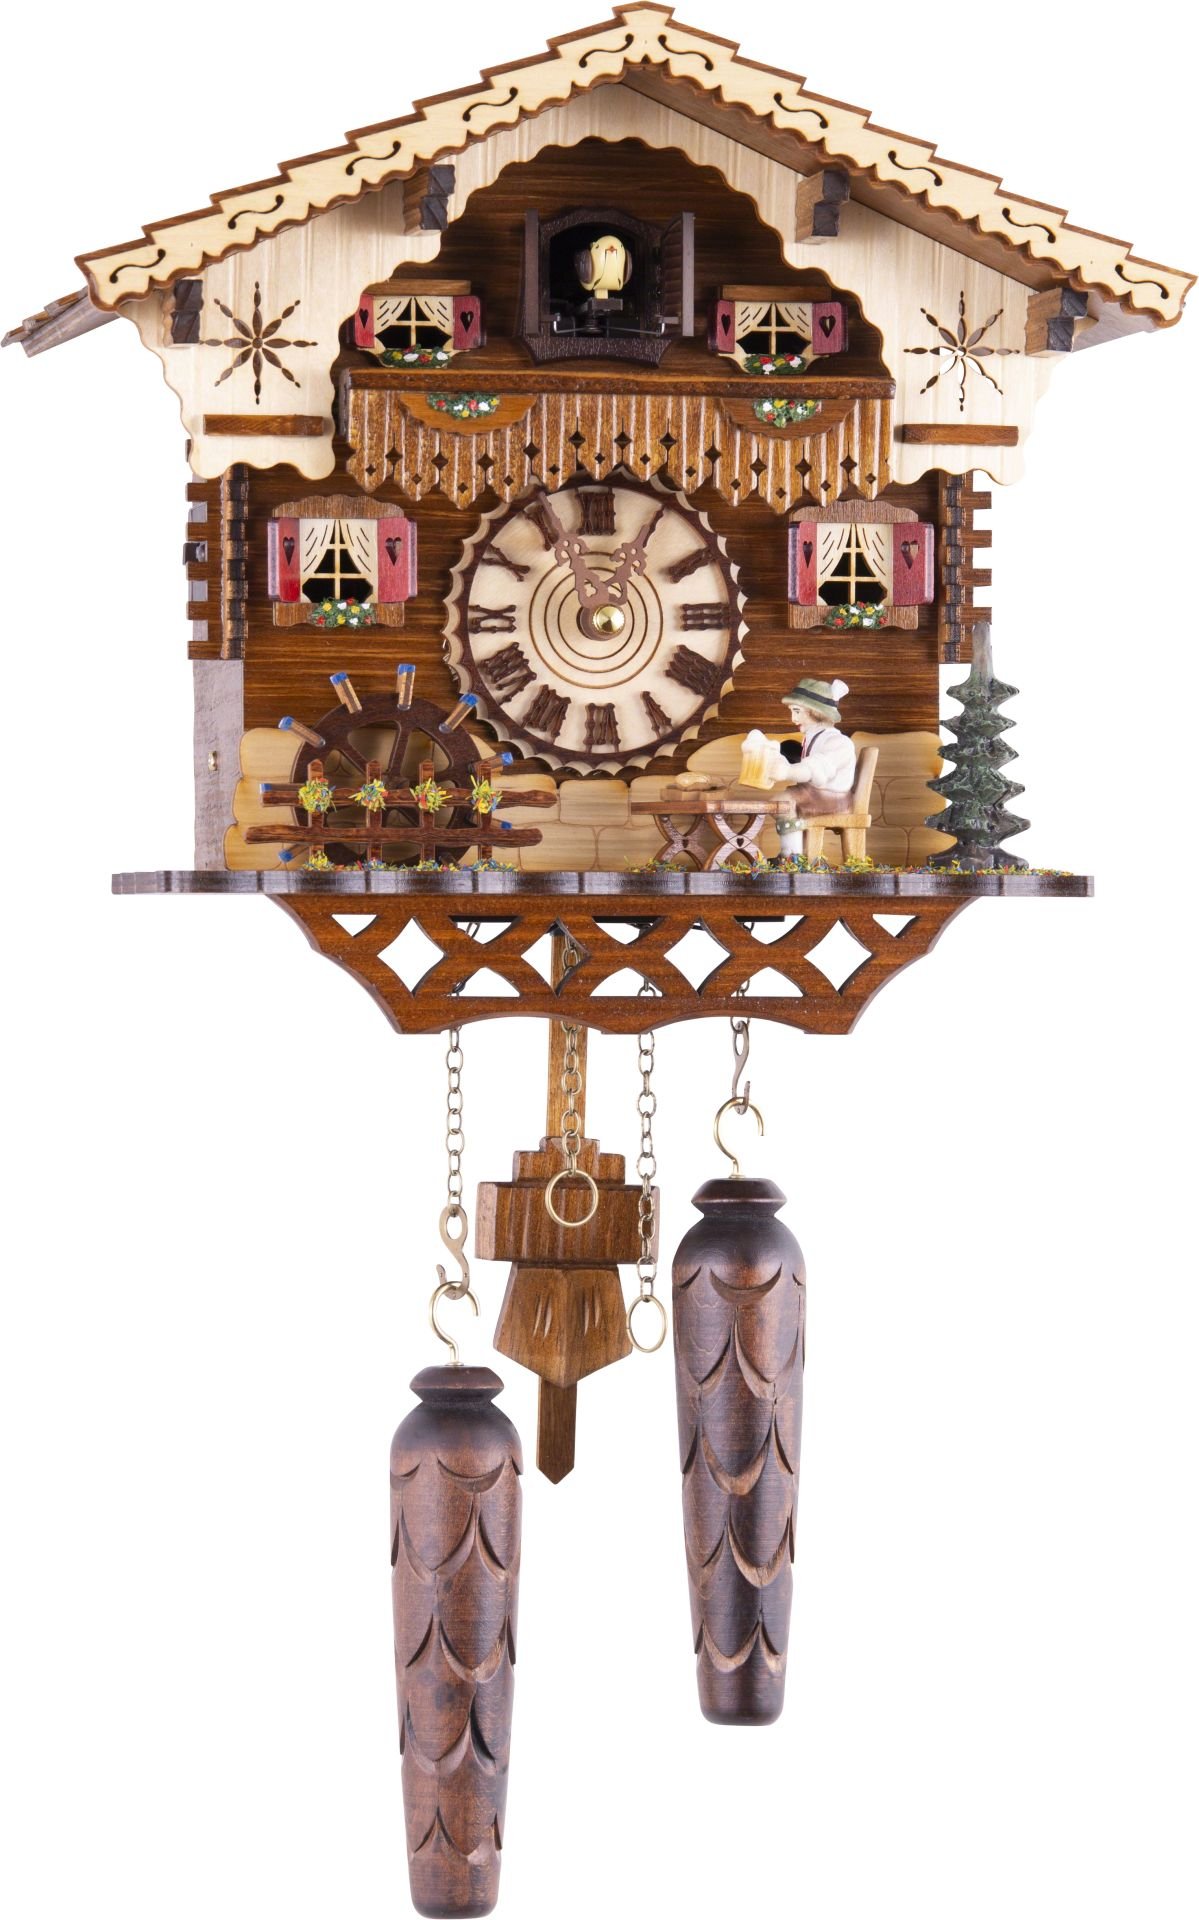 Kuckucksuhr Chalet-Stil Quarz-Uhrwerk 25cm von Trenkle Uhren